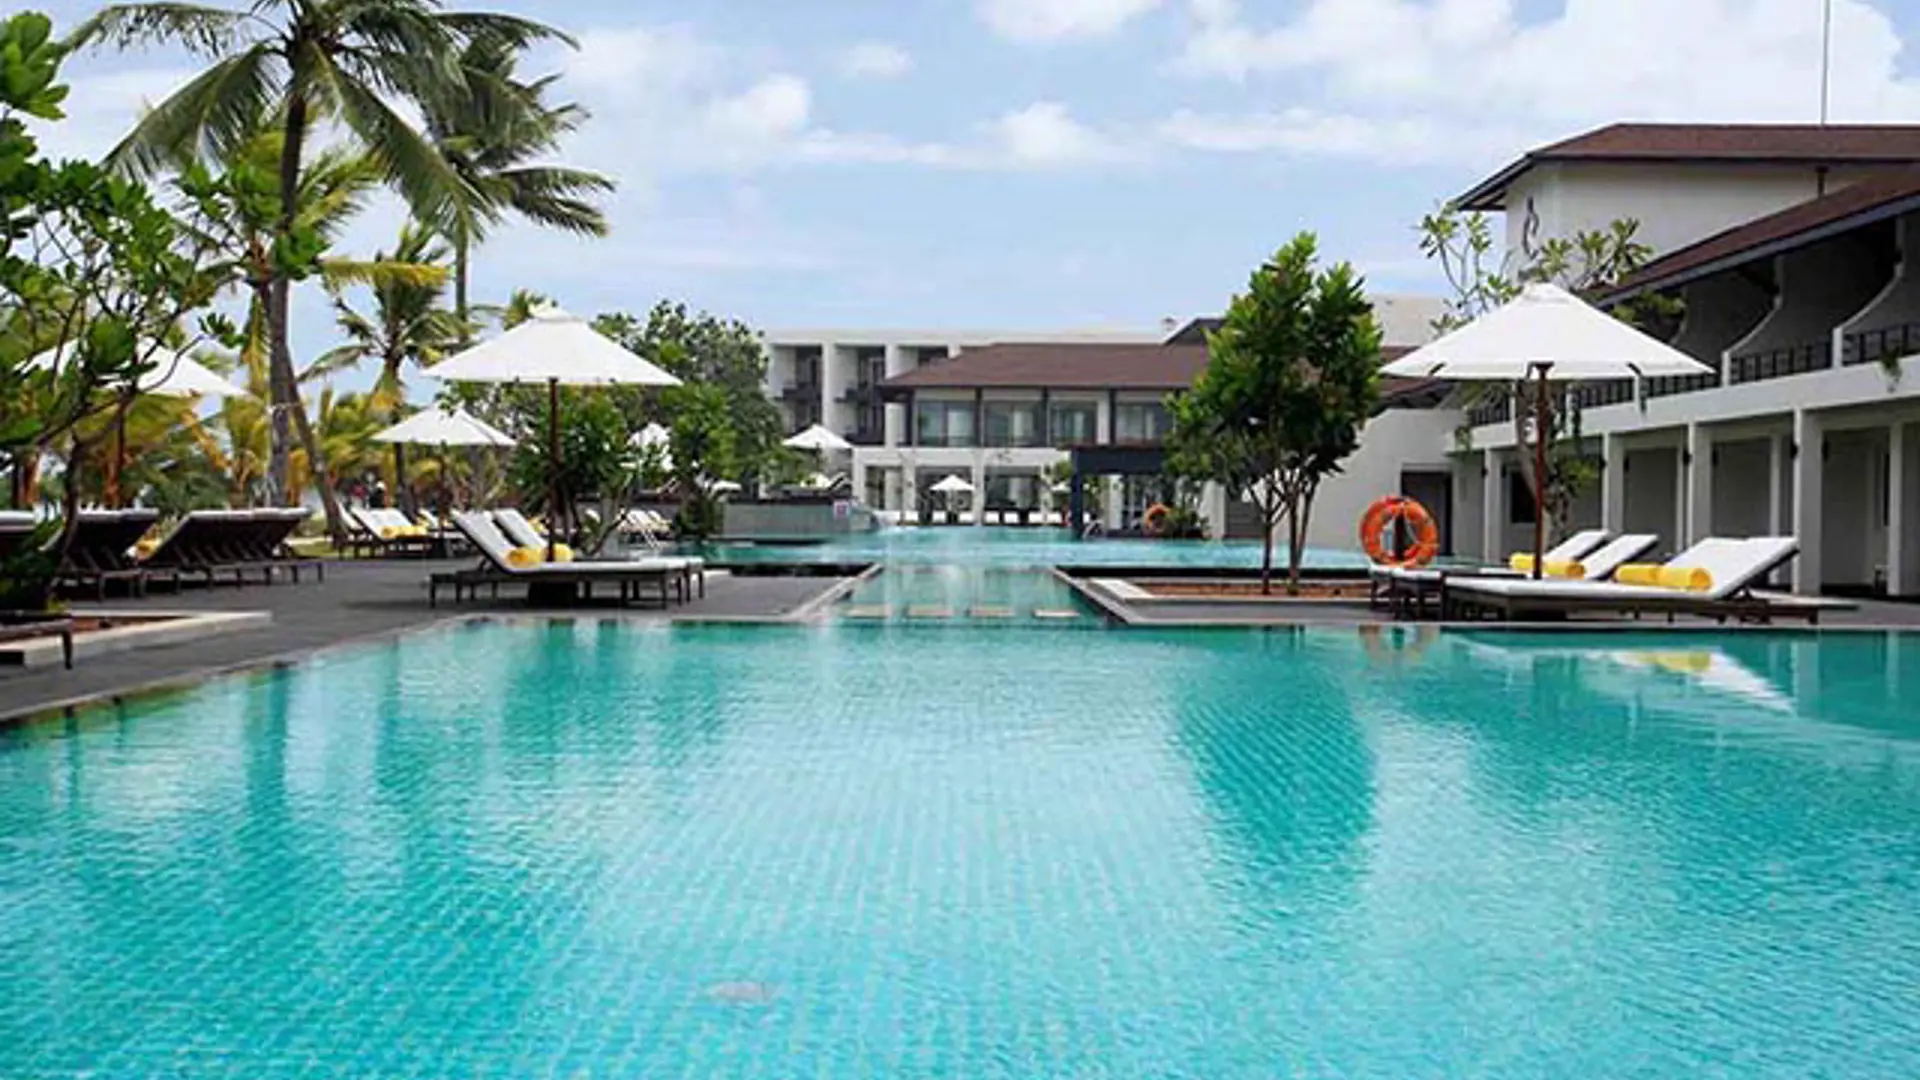 Sri Lanka Swimming Pool 8 640X457